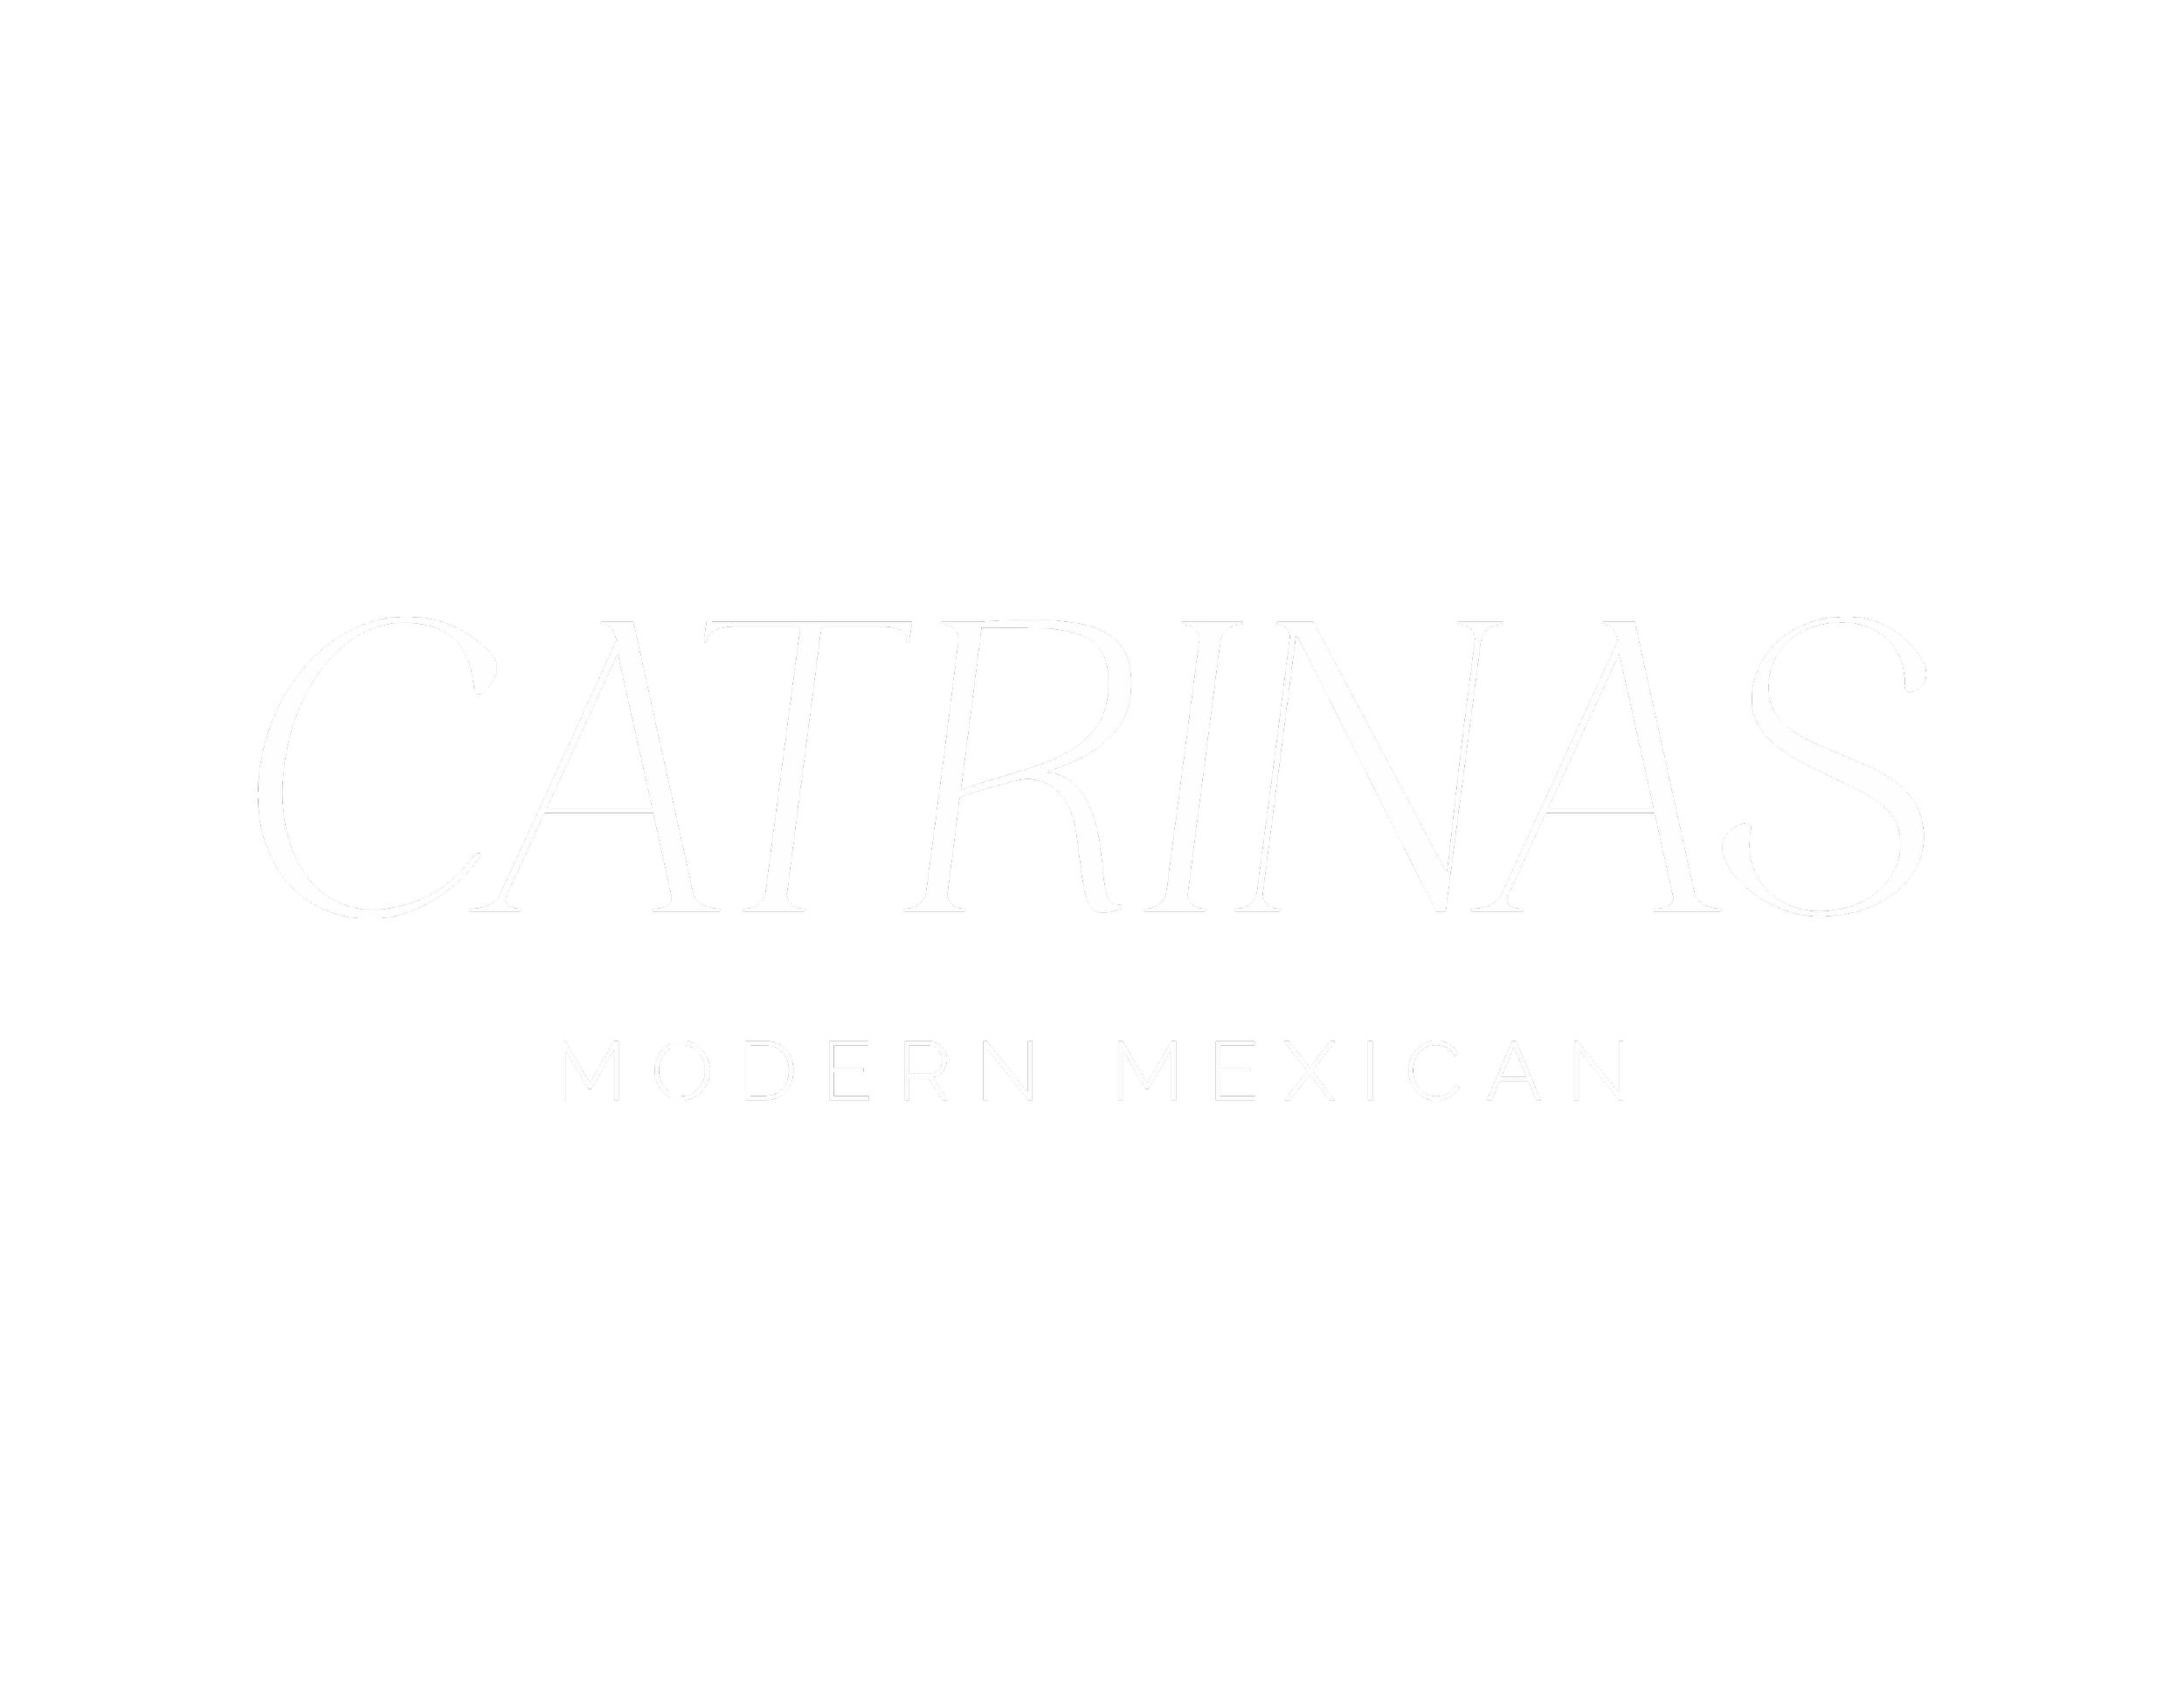 Catrinas | Modern Mexican